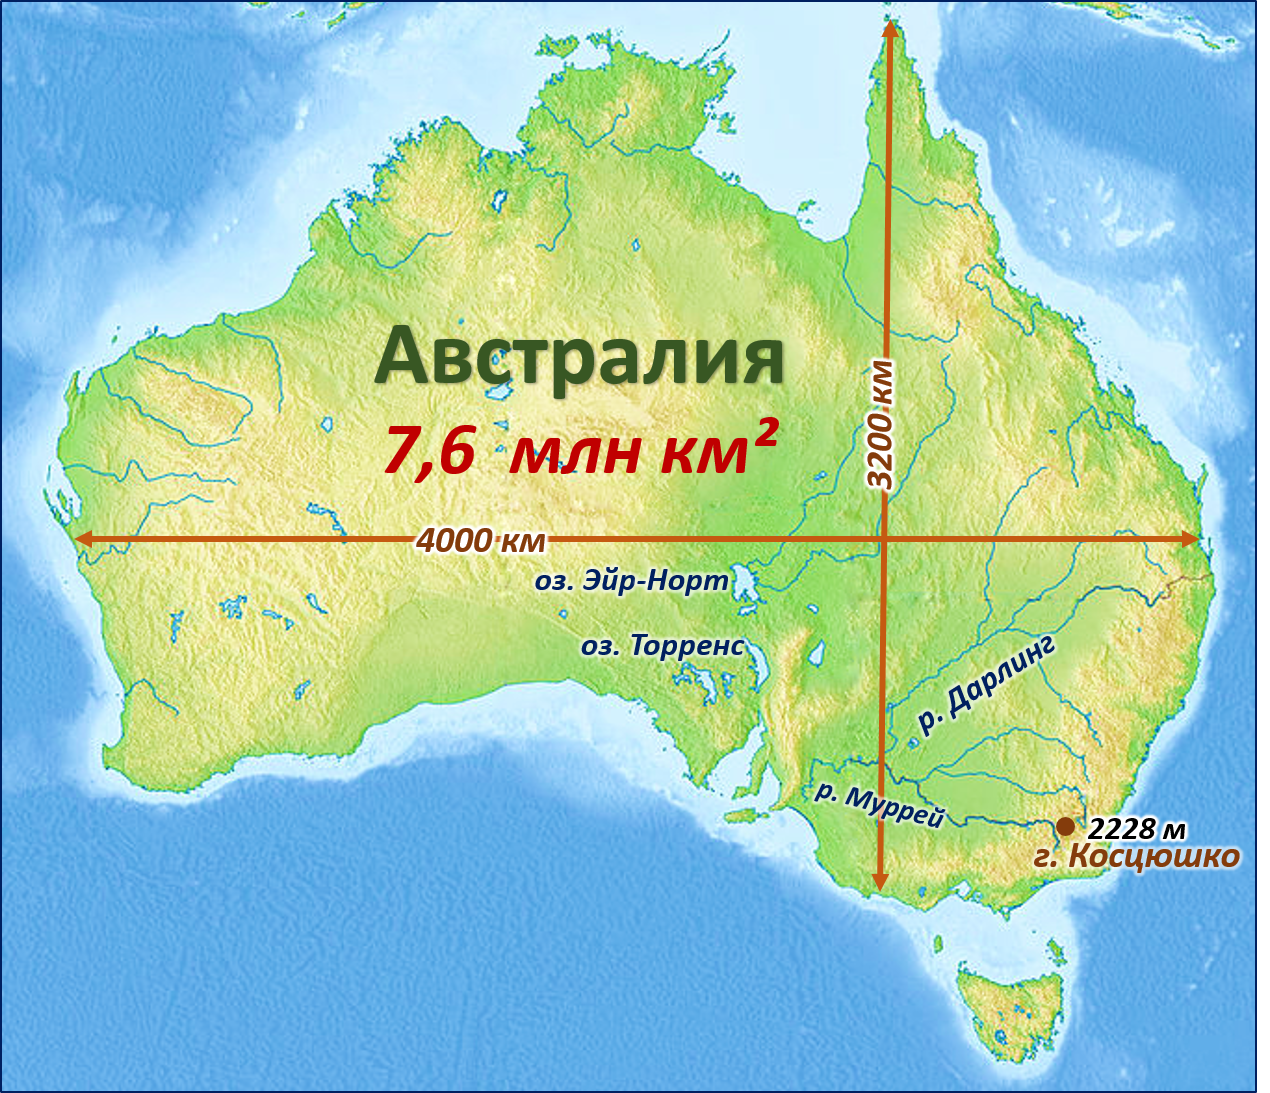 Где находится эйр норт. Гора Костюшко на карте Австралии. Пик Косцюшко Австралия. Озеро Эйр-Норт на карте Австралии. Гора Косцюшко в Австралии на карте.